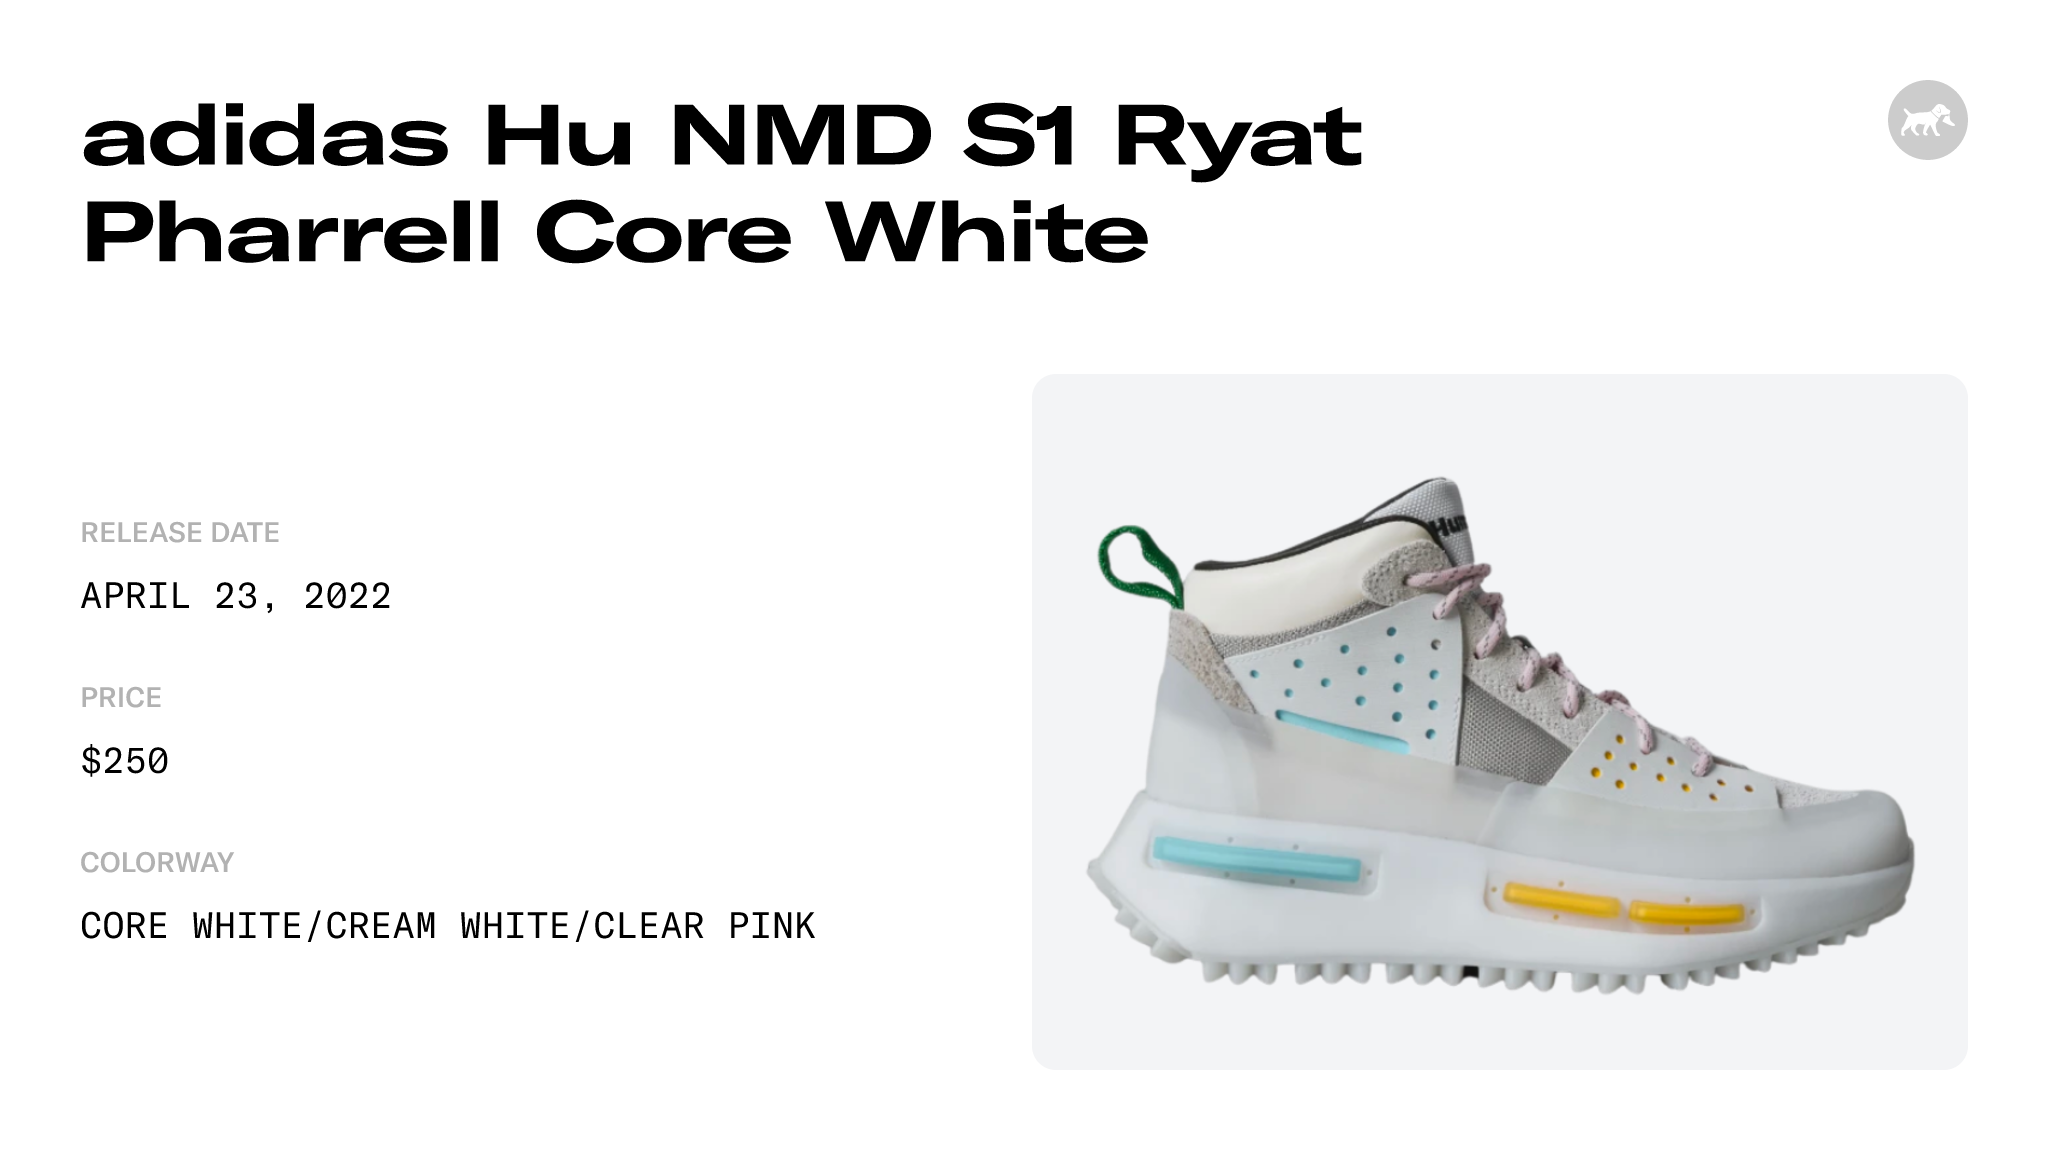 Adidas Hu NMD S1 Ryat Pharrell Core White